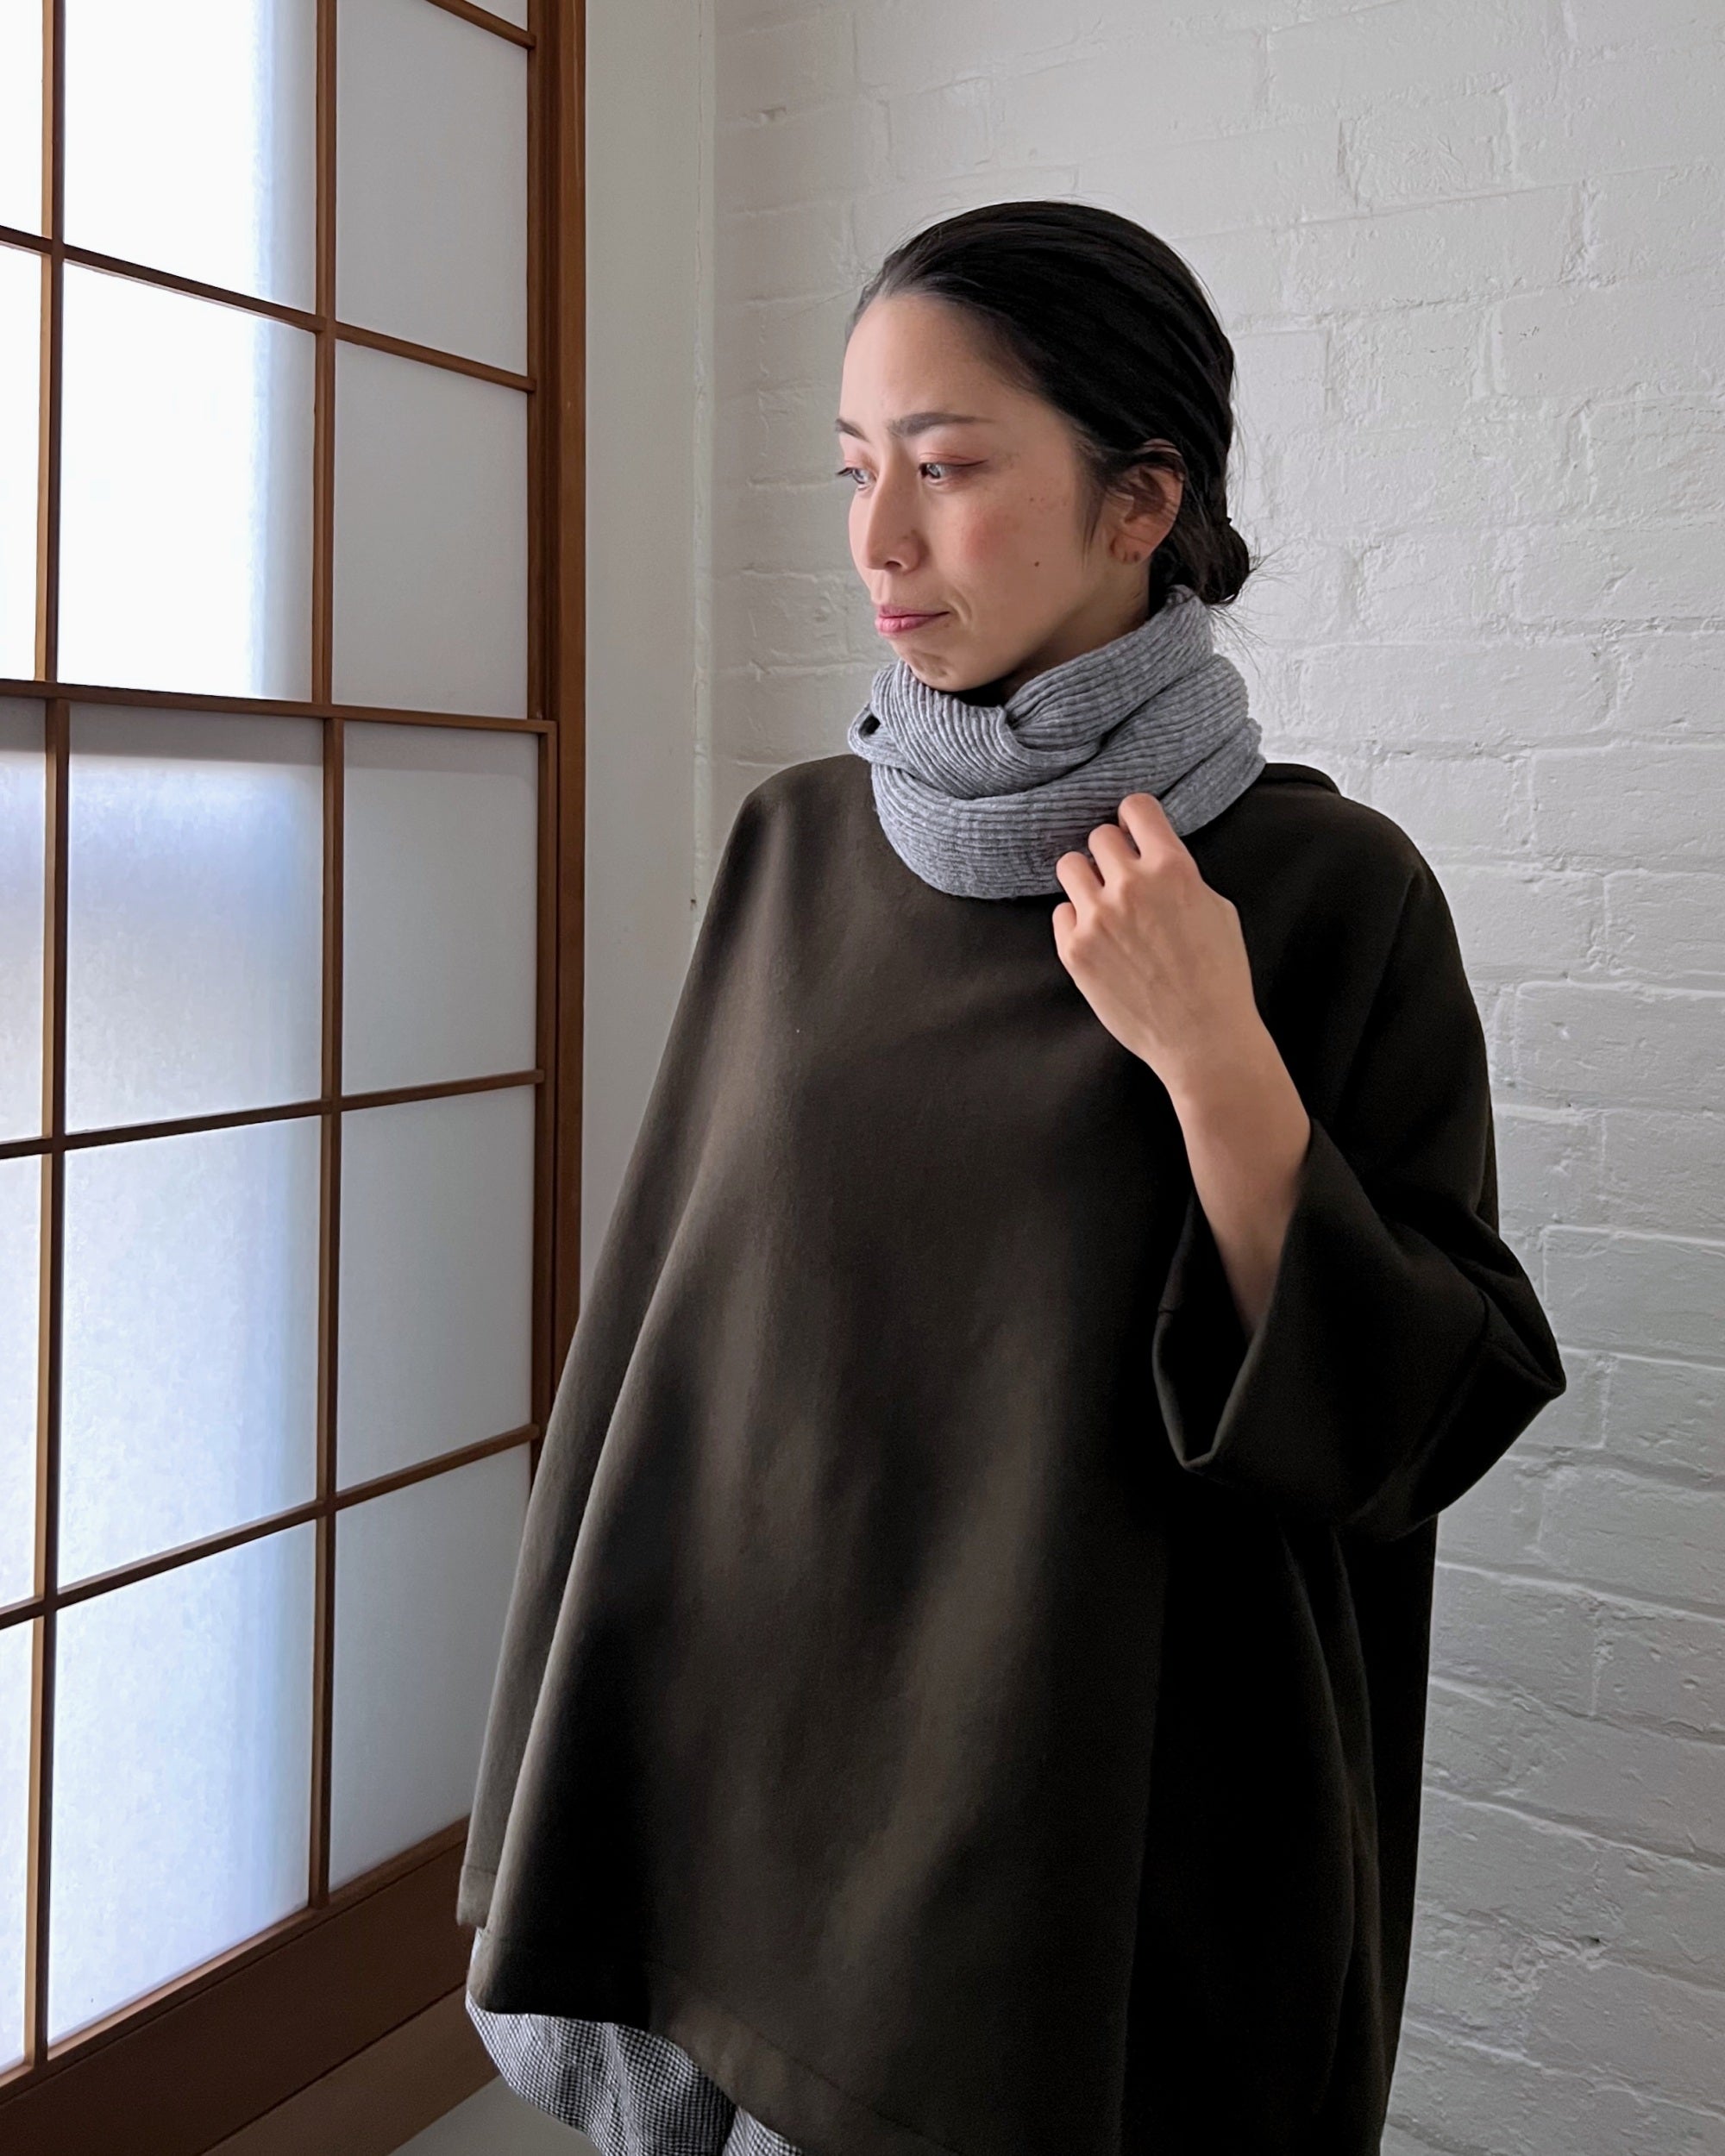 memeri : merino wool loop scarf in flint